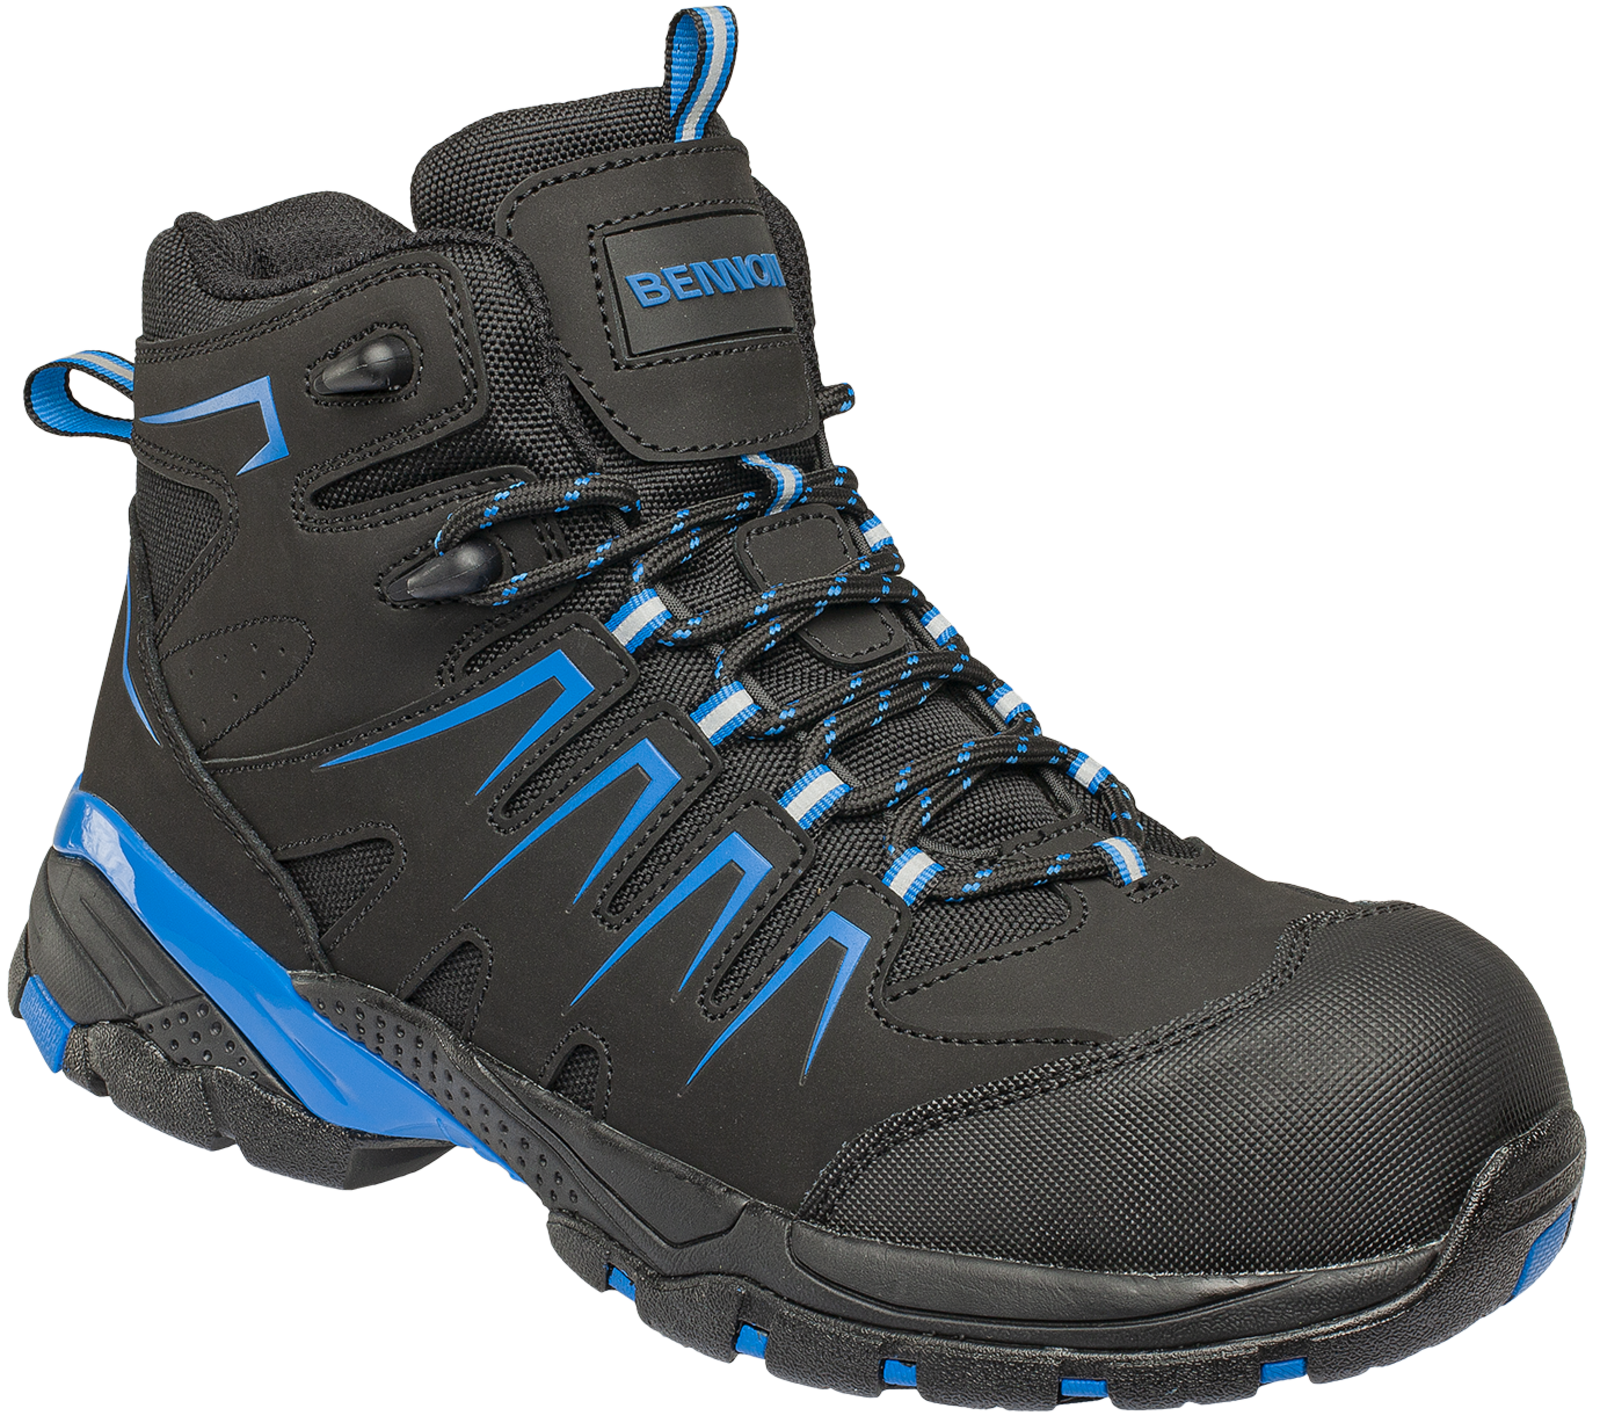 Bezpečnostná členková obuv Bennon Orlando XTR S3 NM High - veľkosť: 44, farba: čierna/modrá